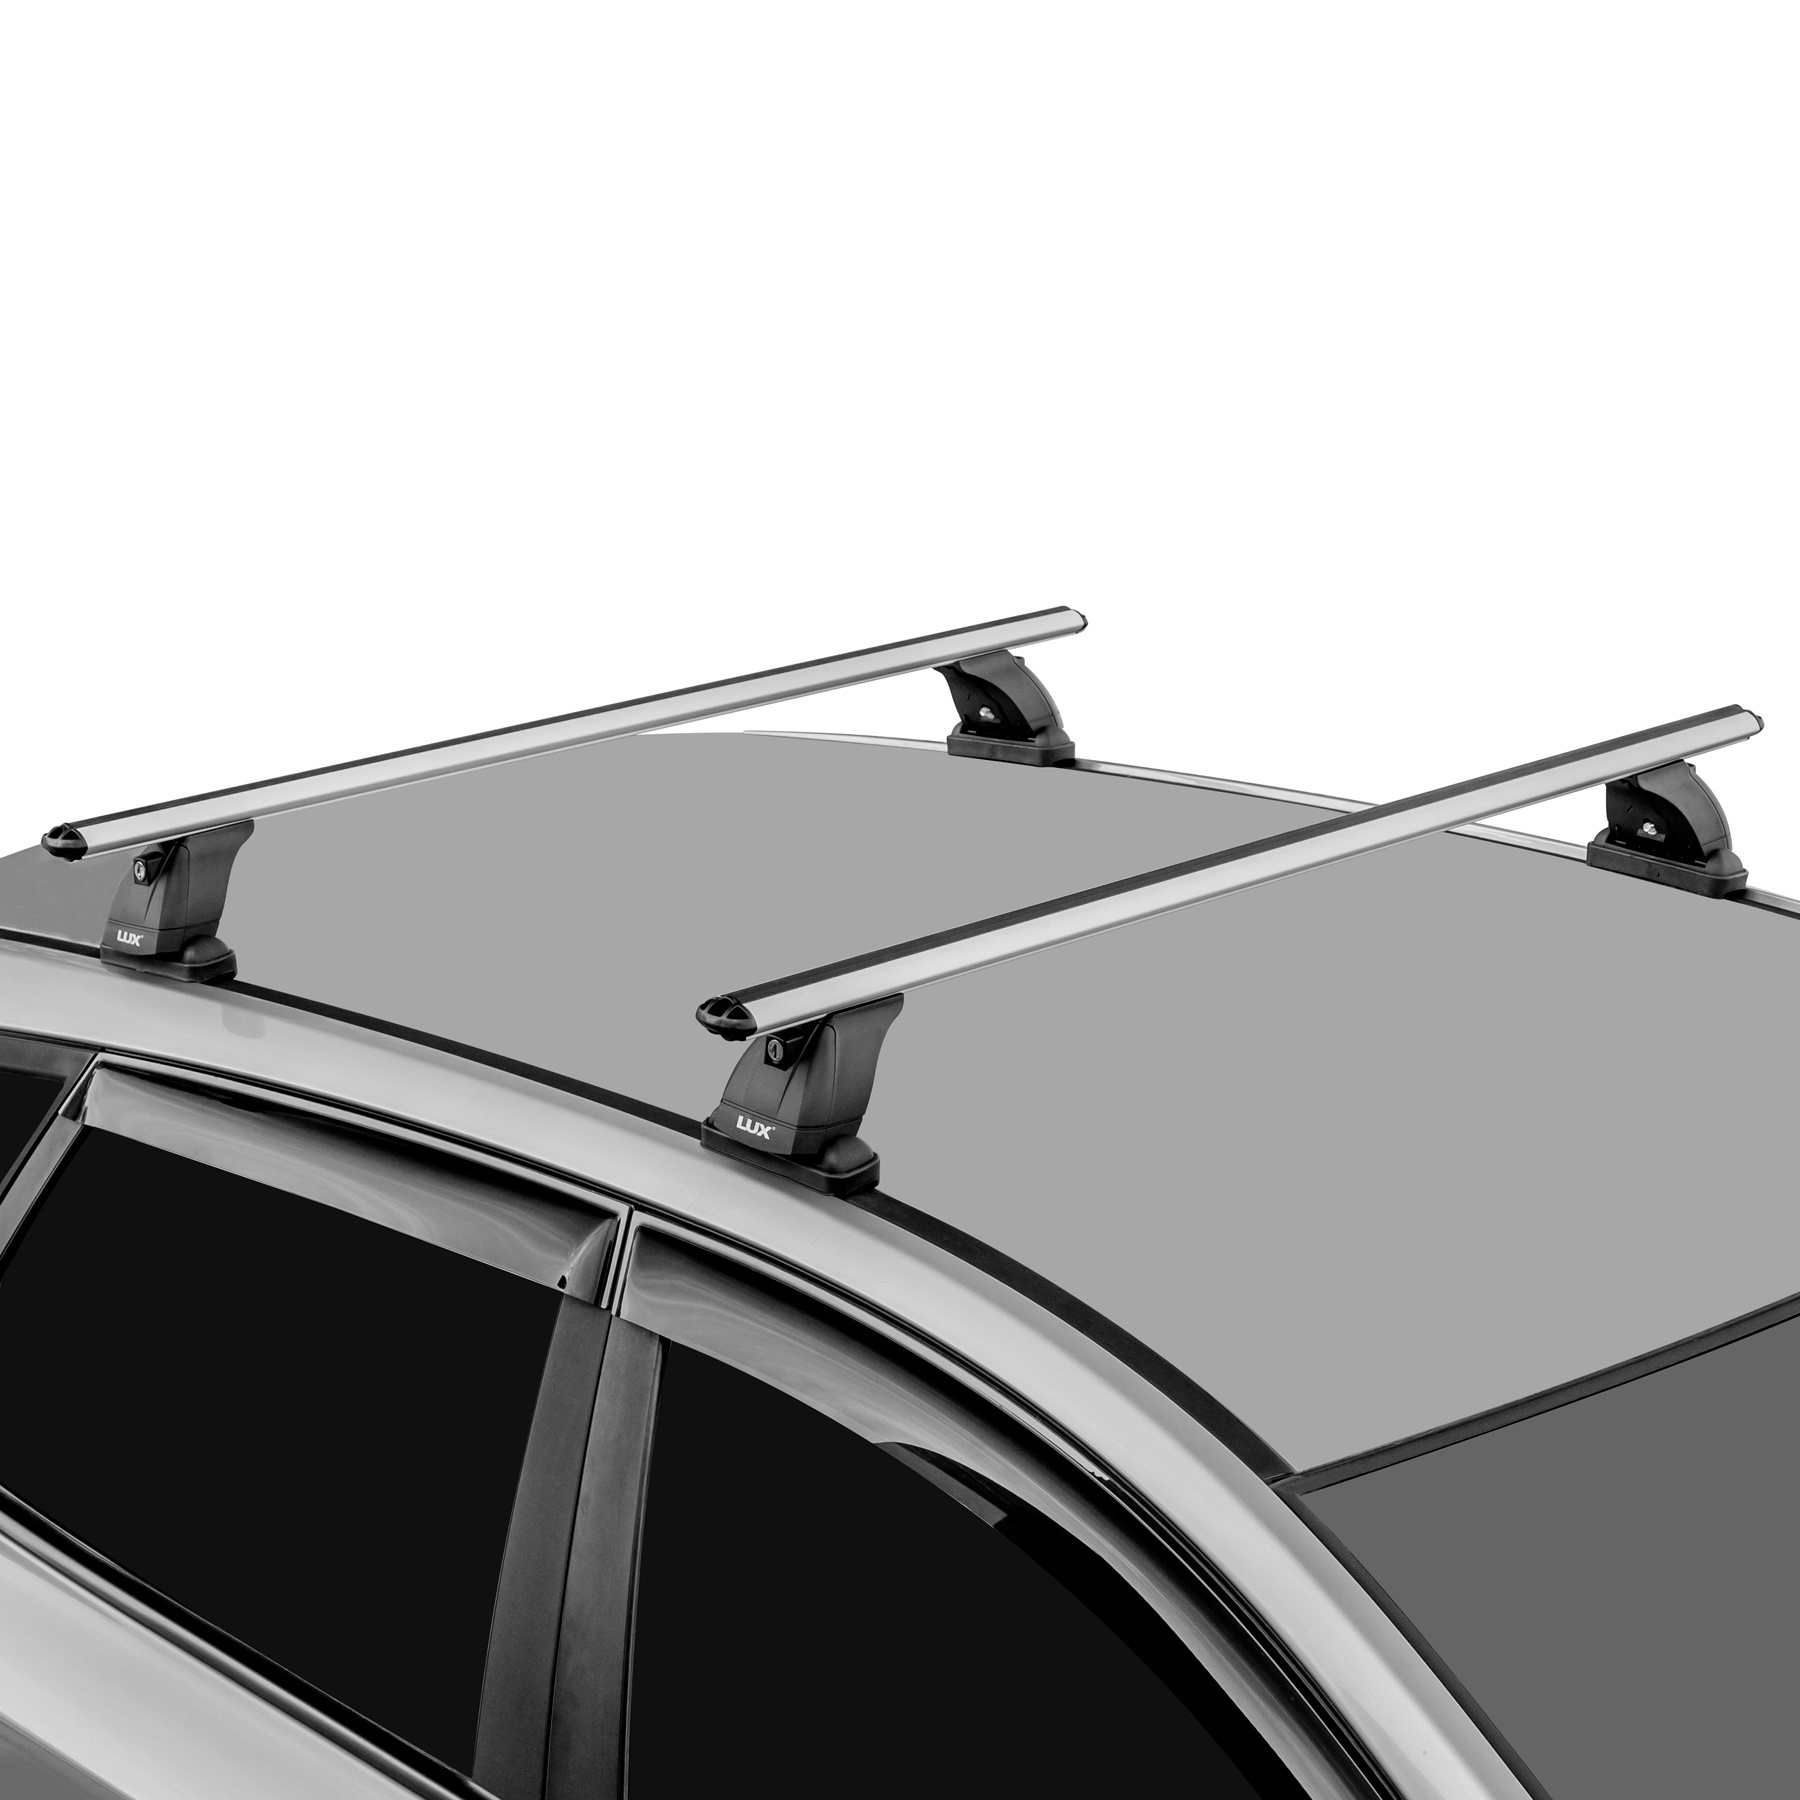 Багажник на крышу Opel Astra H GTC | купить багажник Опель Астра Н GTC